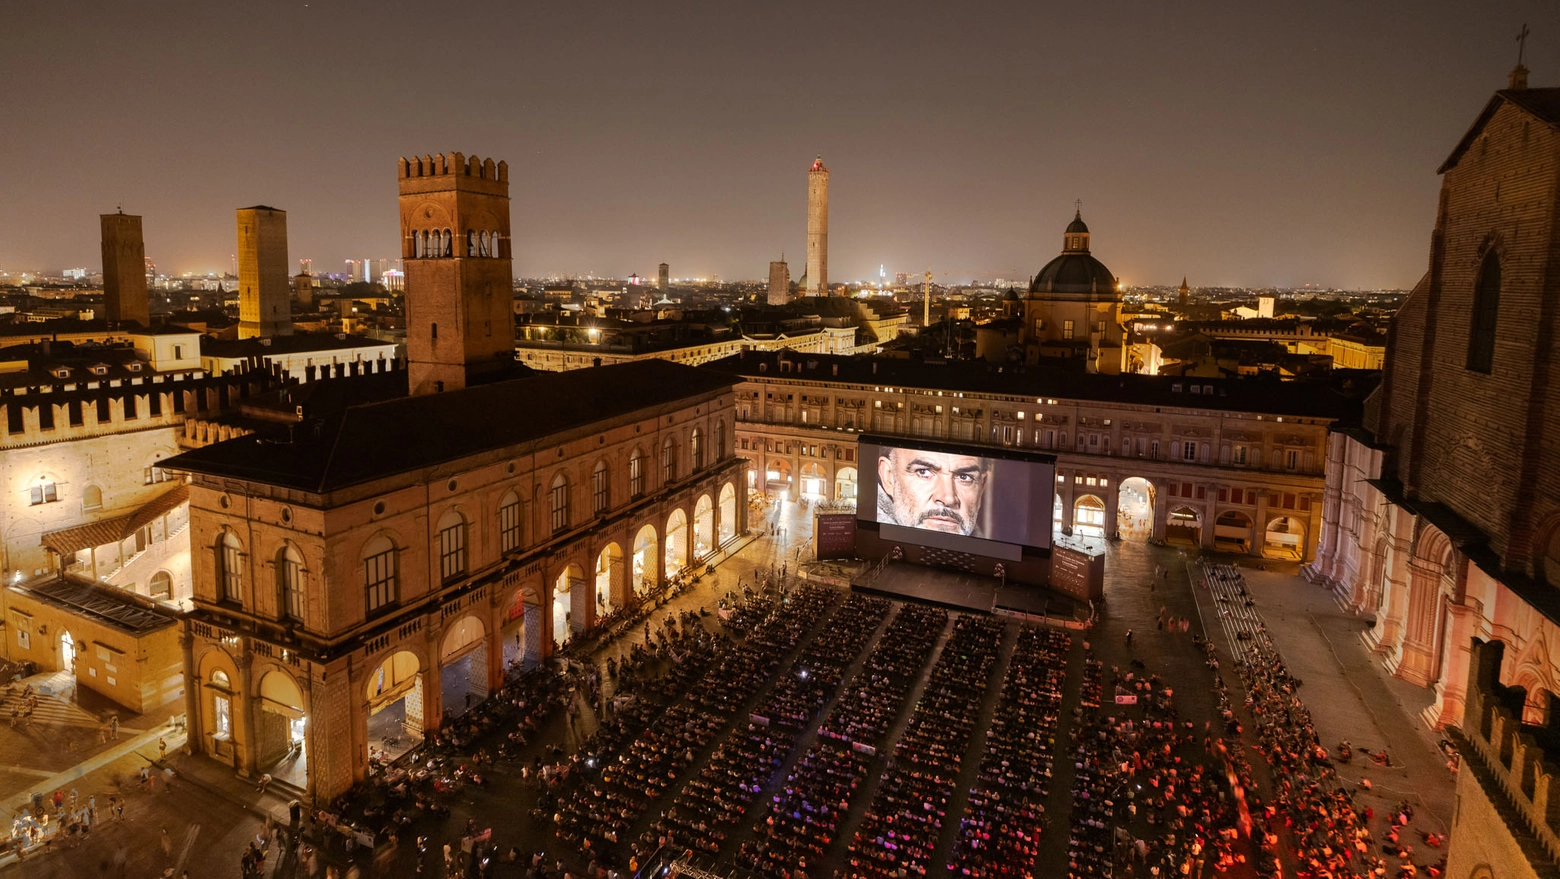 ‘Sotto le stelle del cinema’, dal 17 giugno al 15 agosto, e ‘Il cinema ritrovato’, dal 22 al 30 giugno, sono pronti a regalare ai cittadini bolognesi un momento di comunità a tema cinematografico